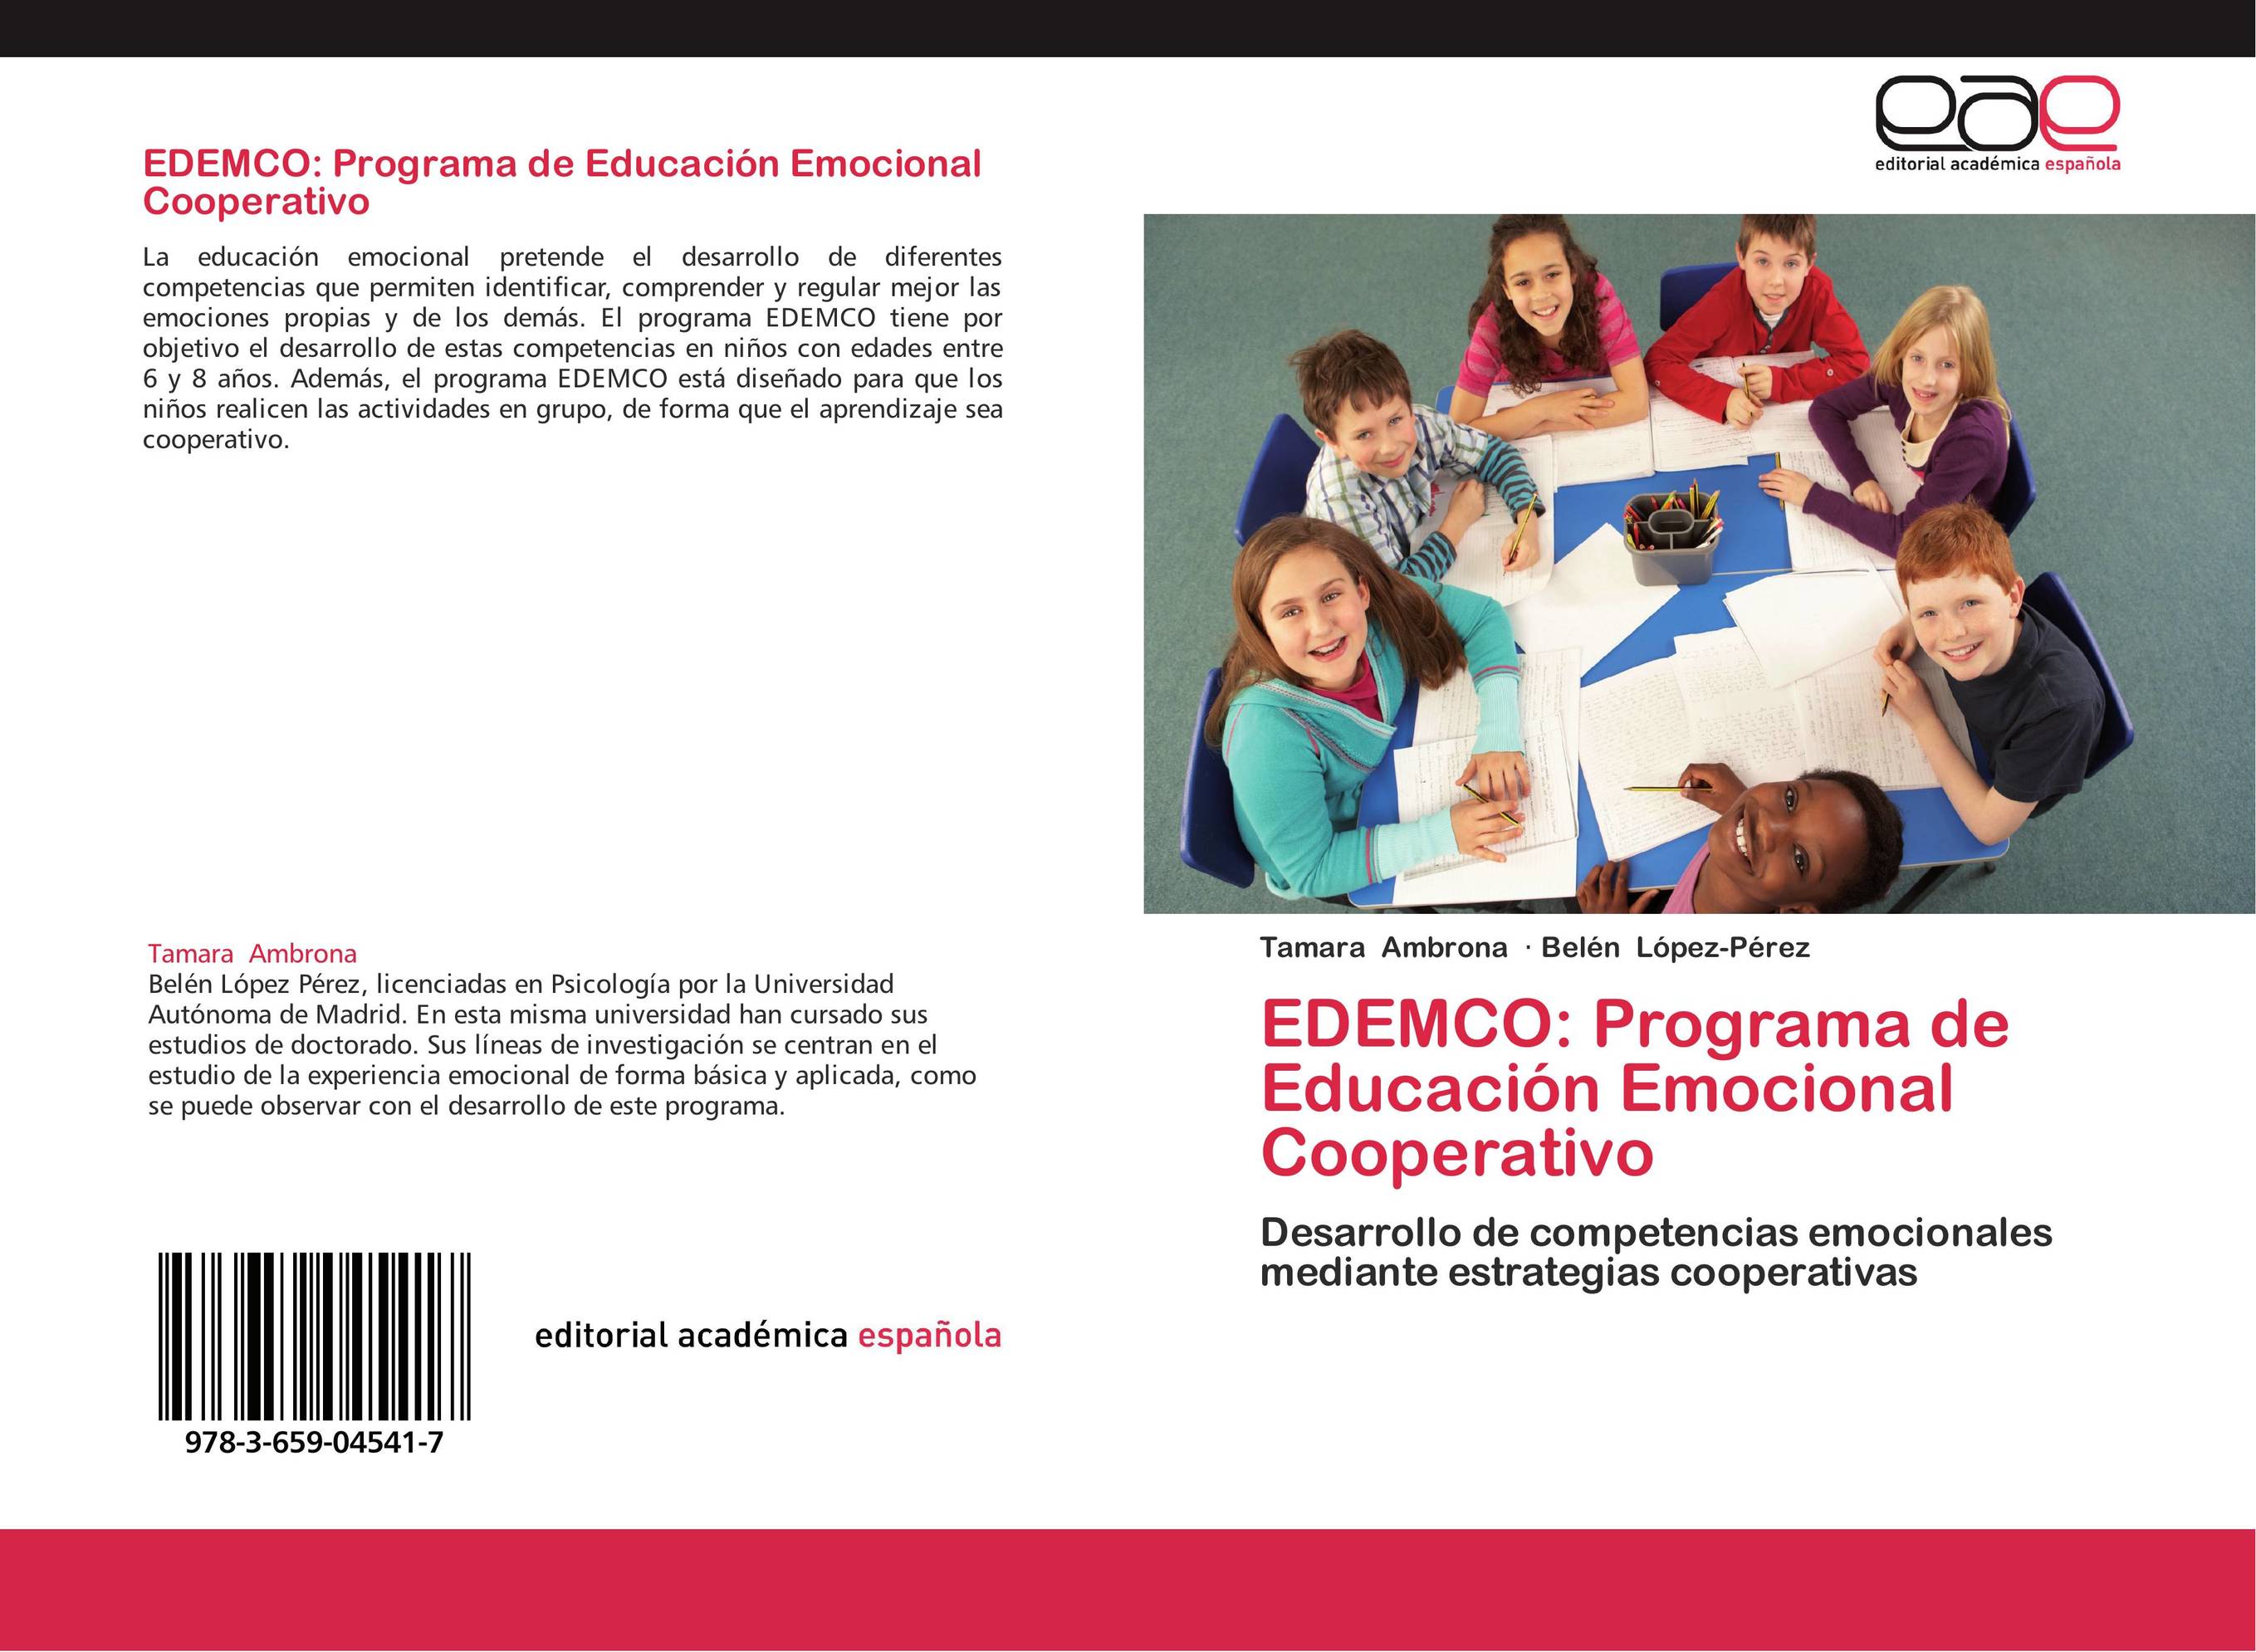 EDEMCO: Programa de Educación Emocional Cooperativo